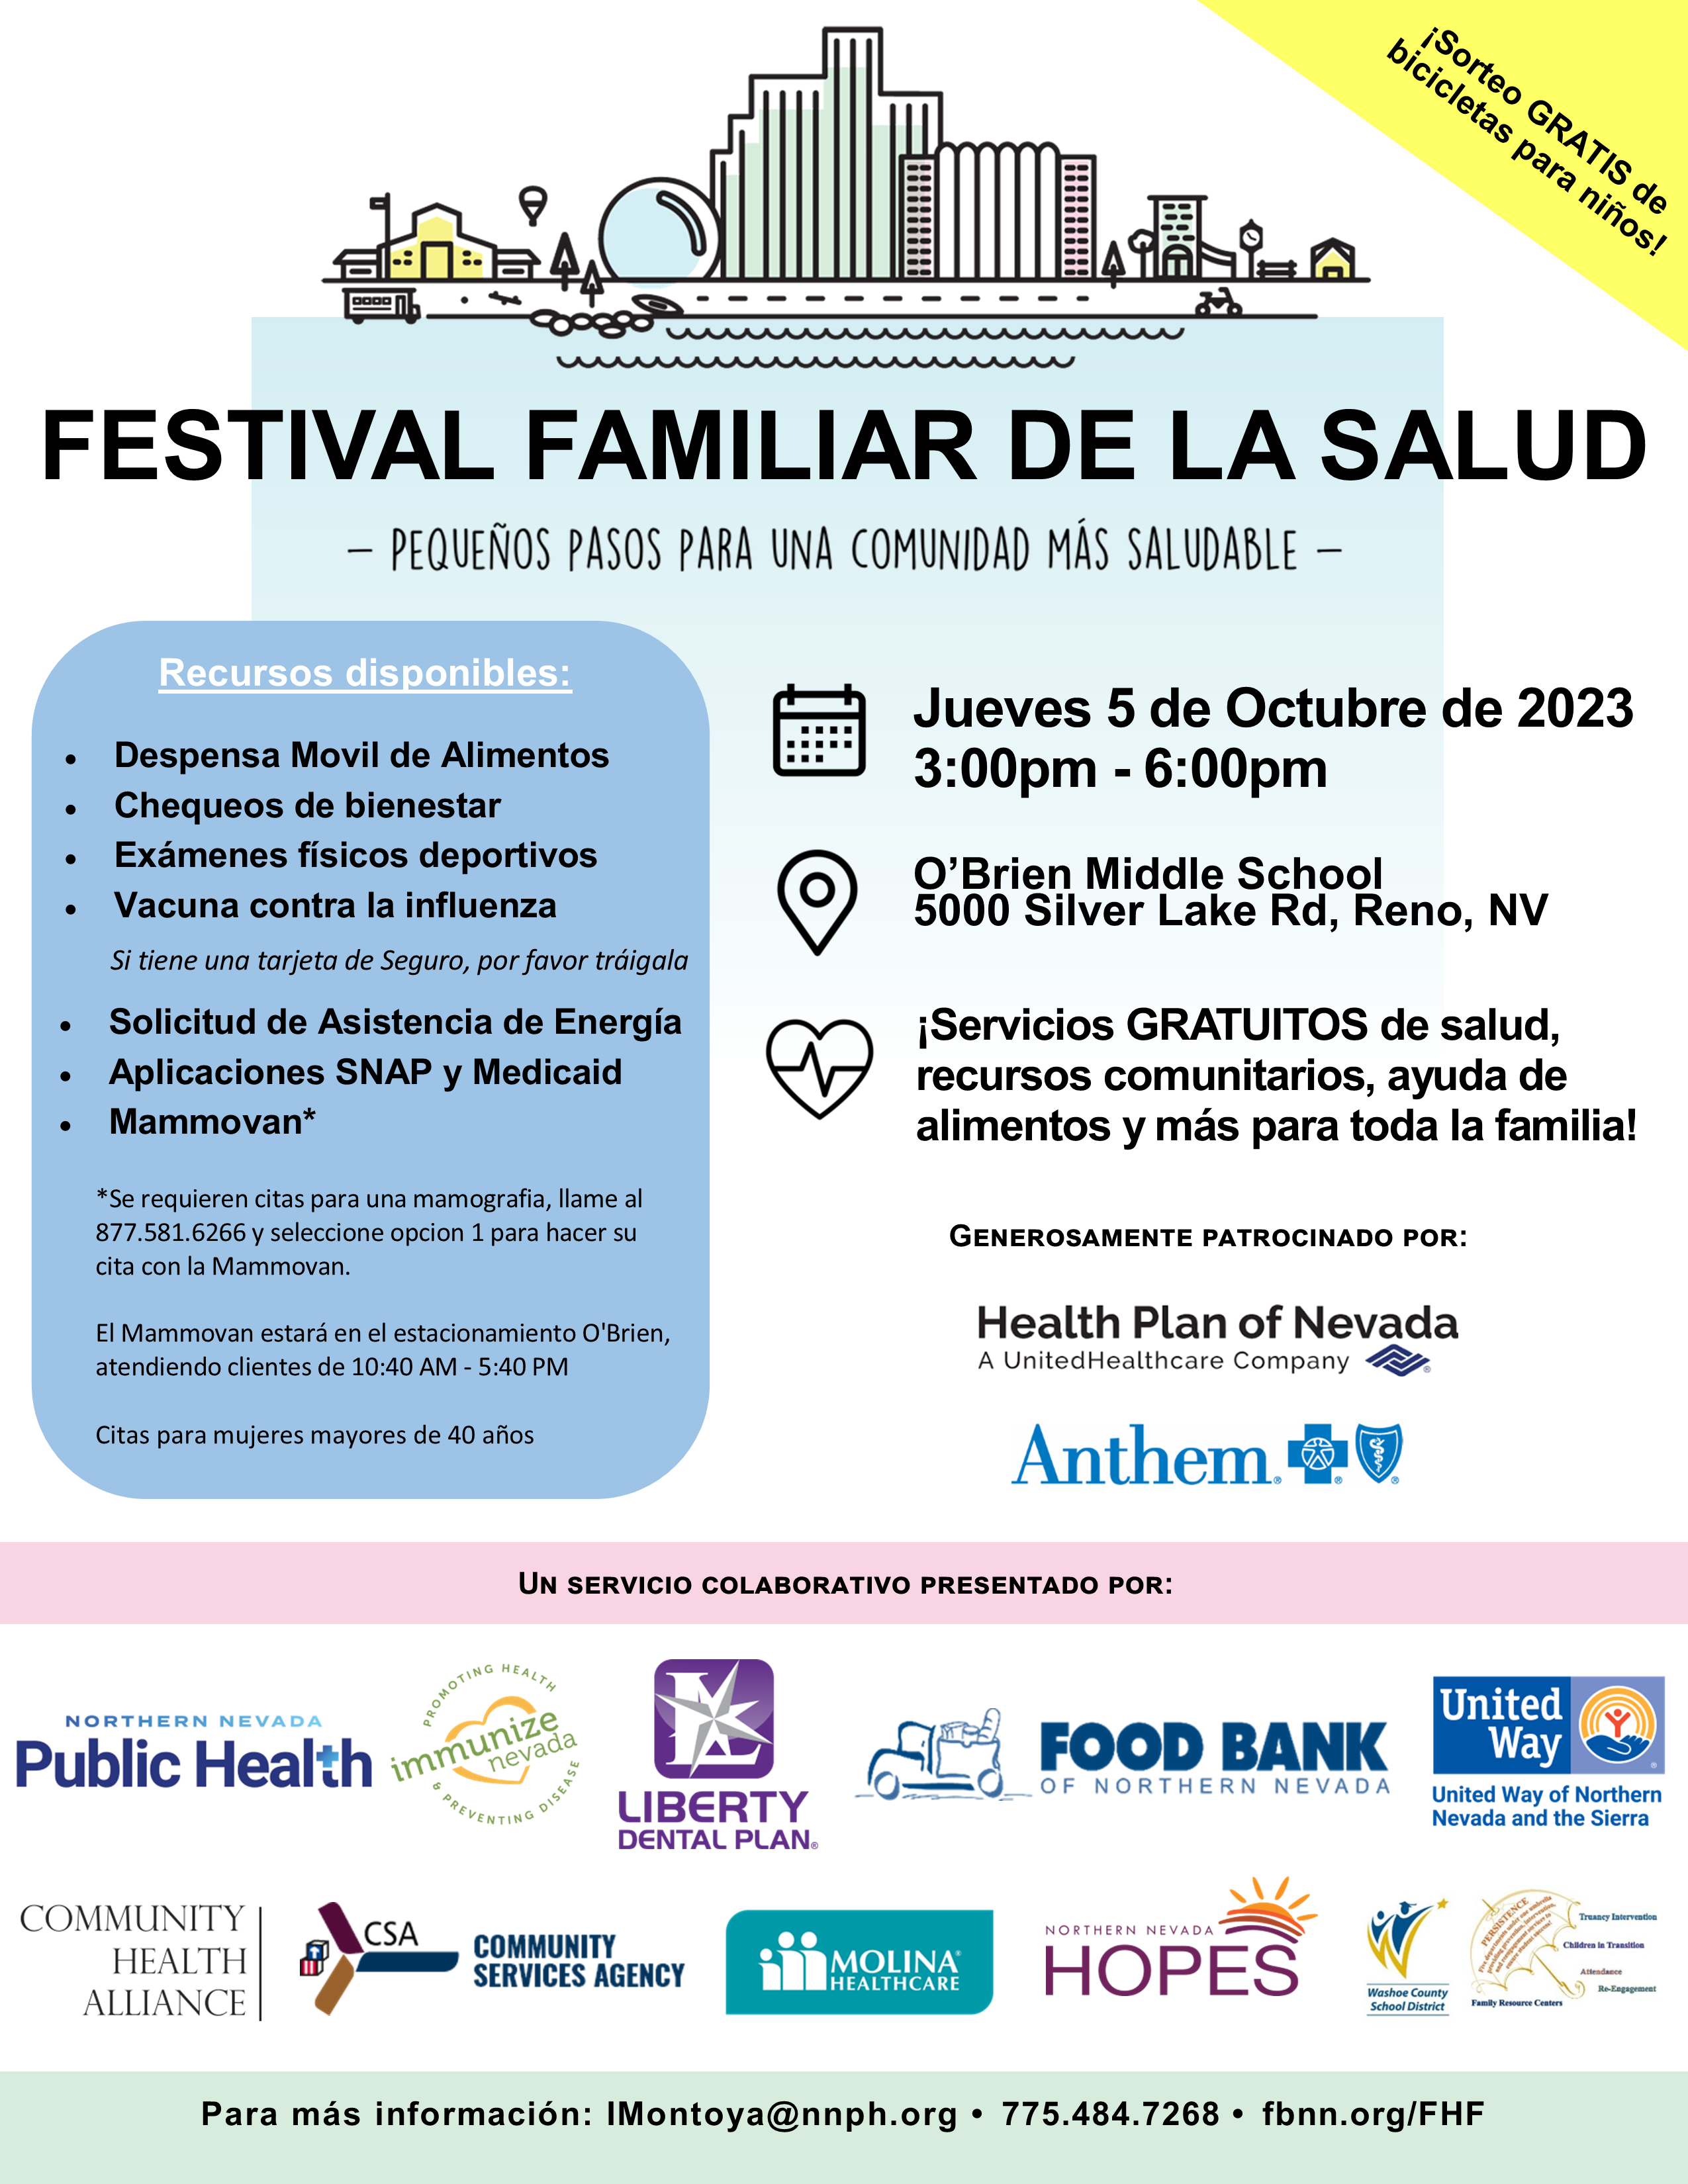 Family Health Festival Flyer (Spanish)